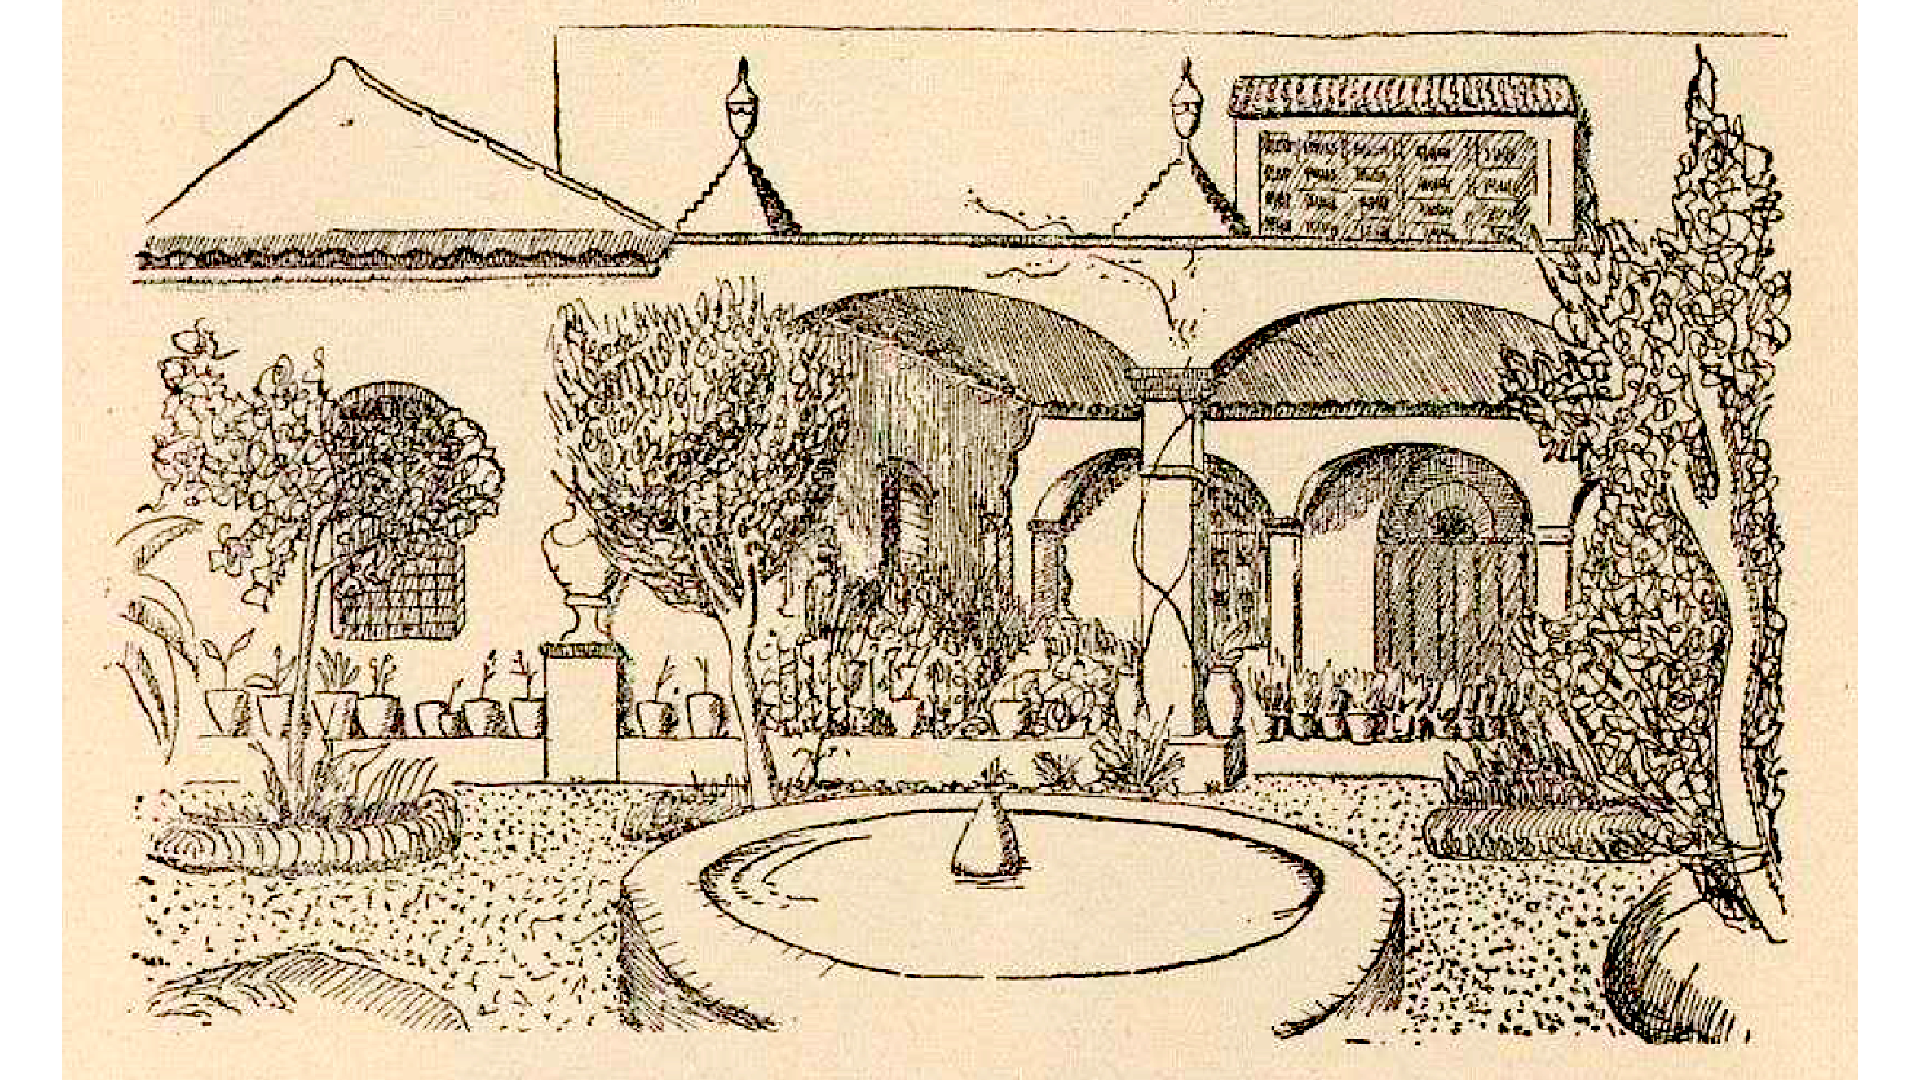 Fig. 11. Perspectiva del jardín y del patio de la casa de Moreno Villa en Churriana. Tomada del artículo Fisonomía del caserío malagueño